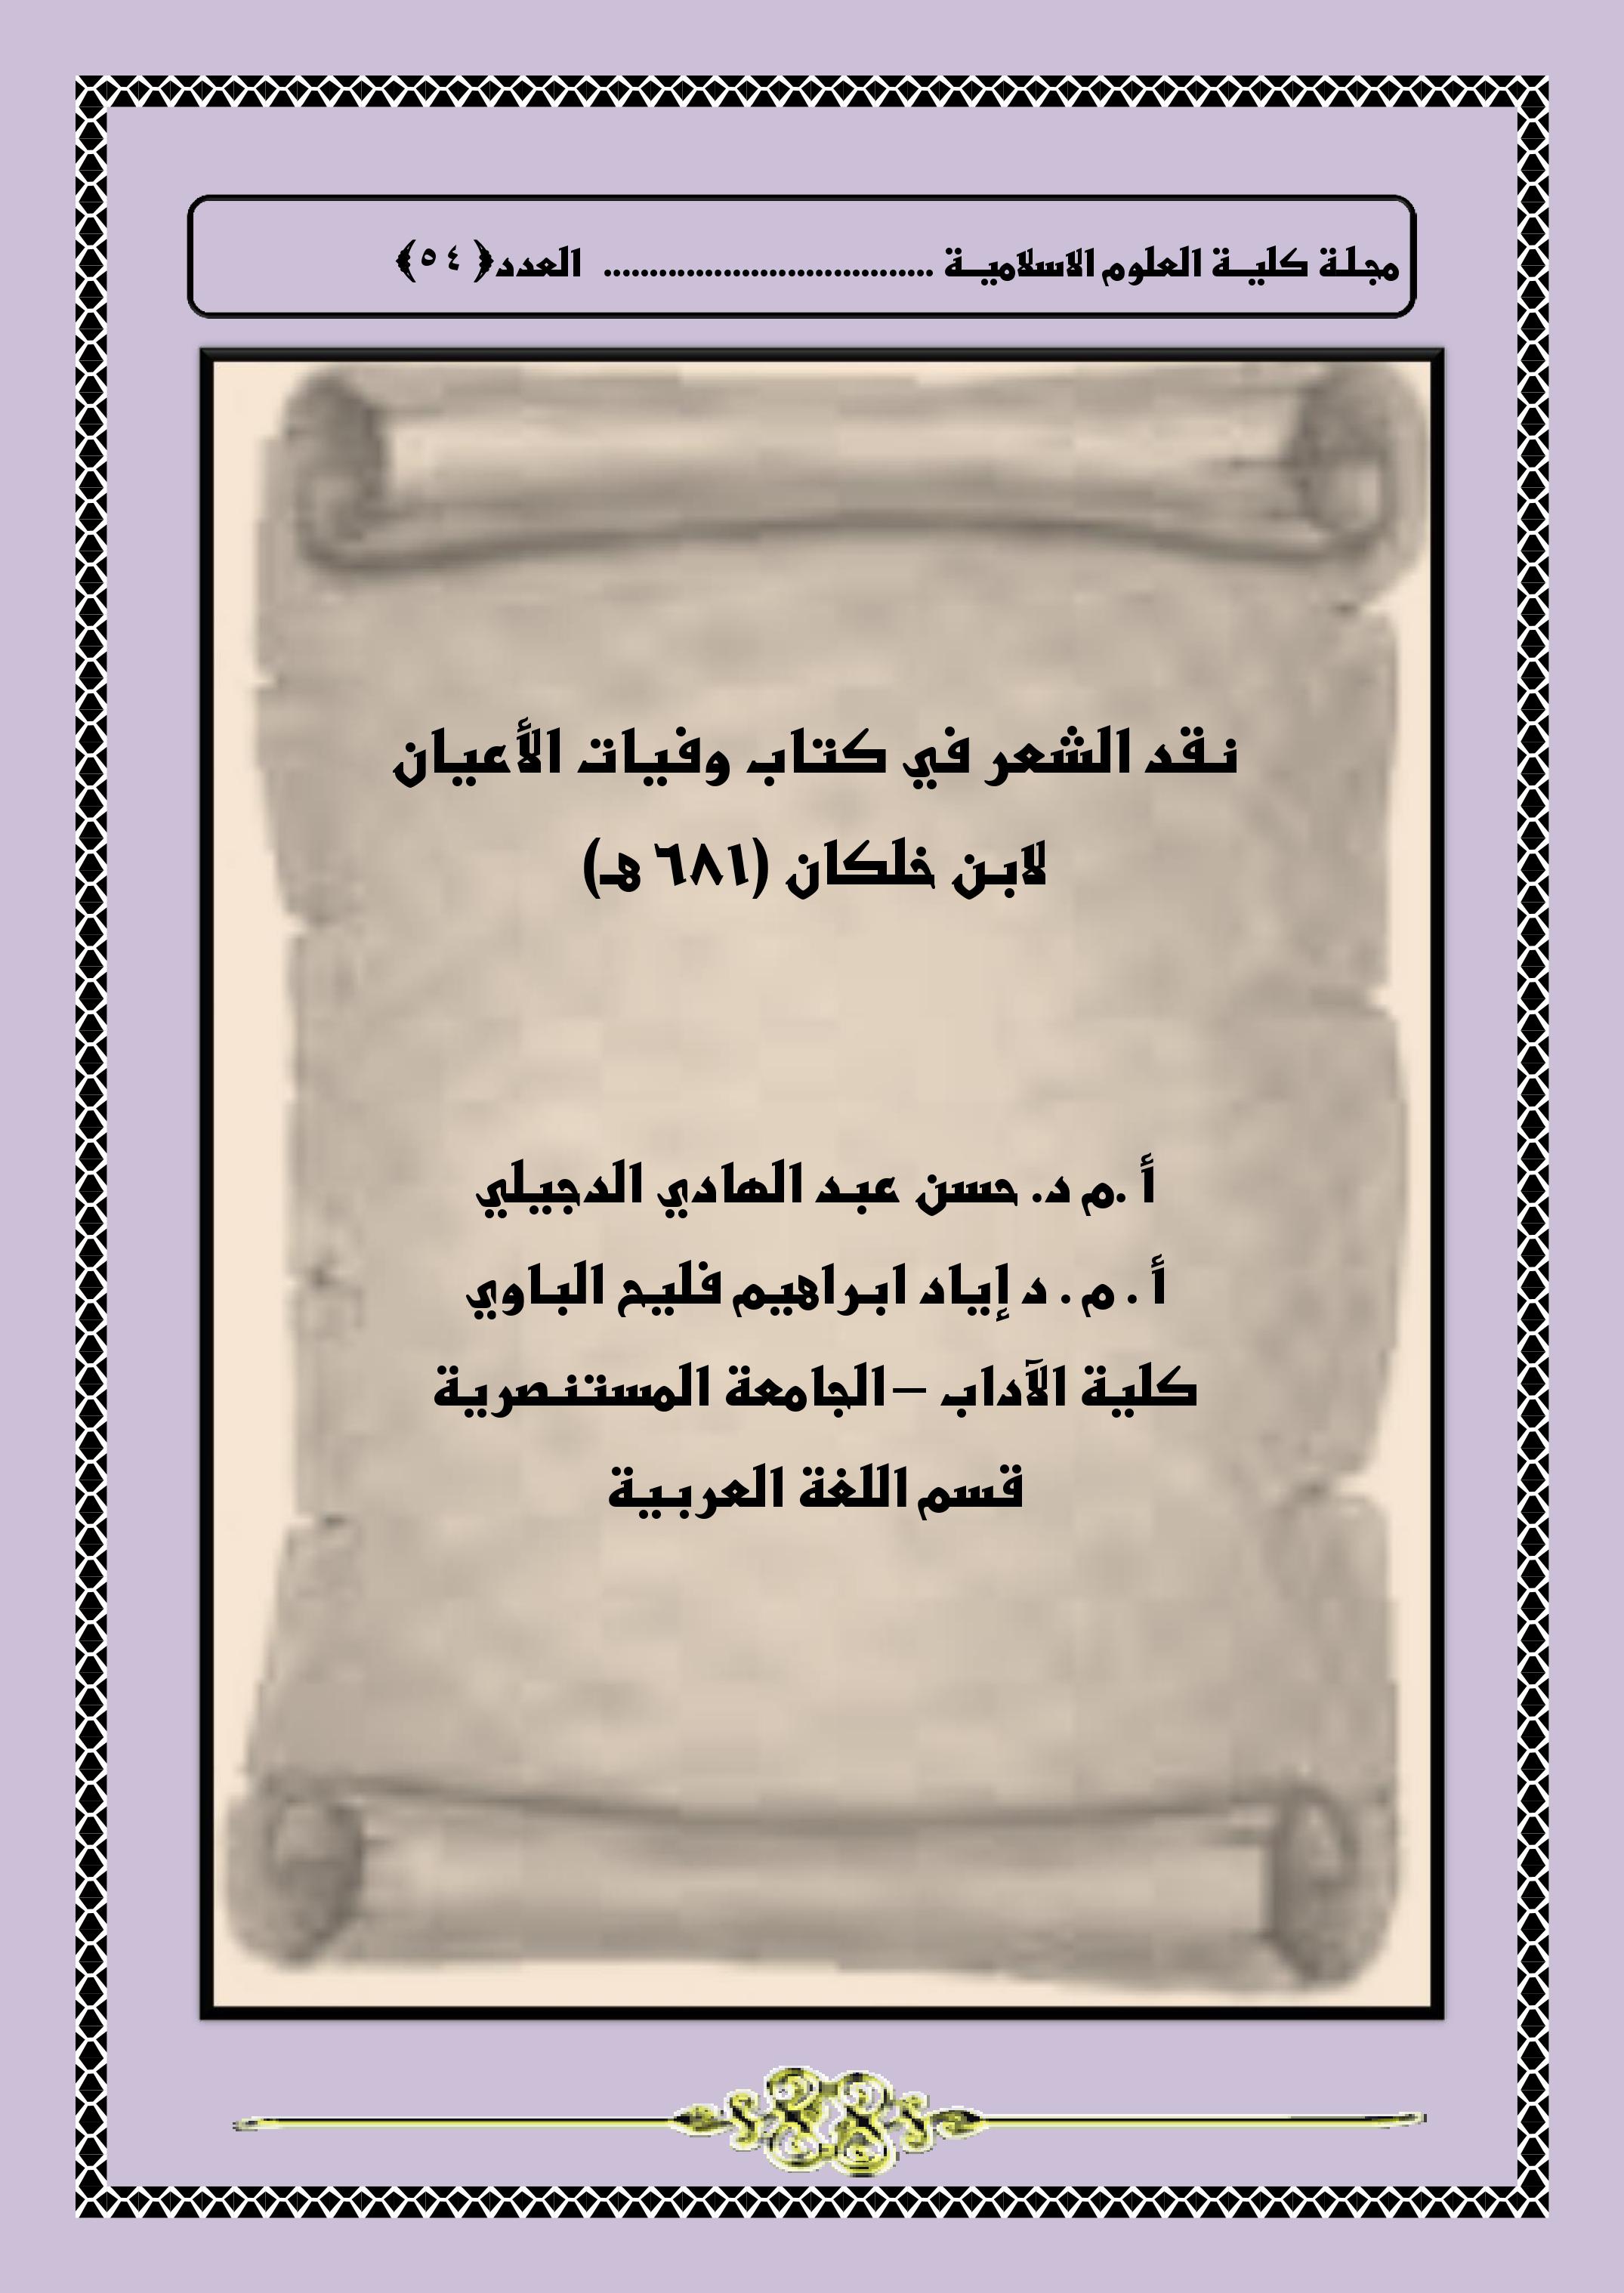 نقد الشعر في كتاب وفيات الأعيان لابن خلكان (681 هـ)